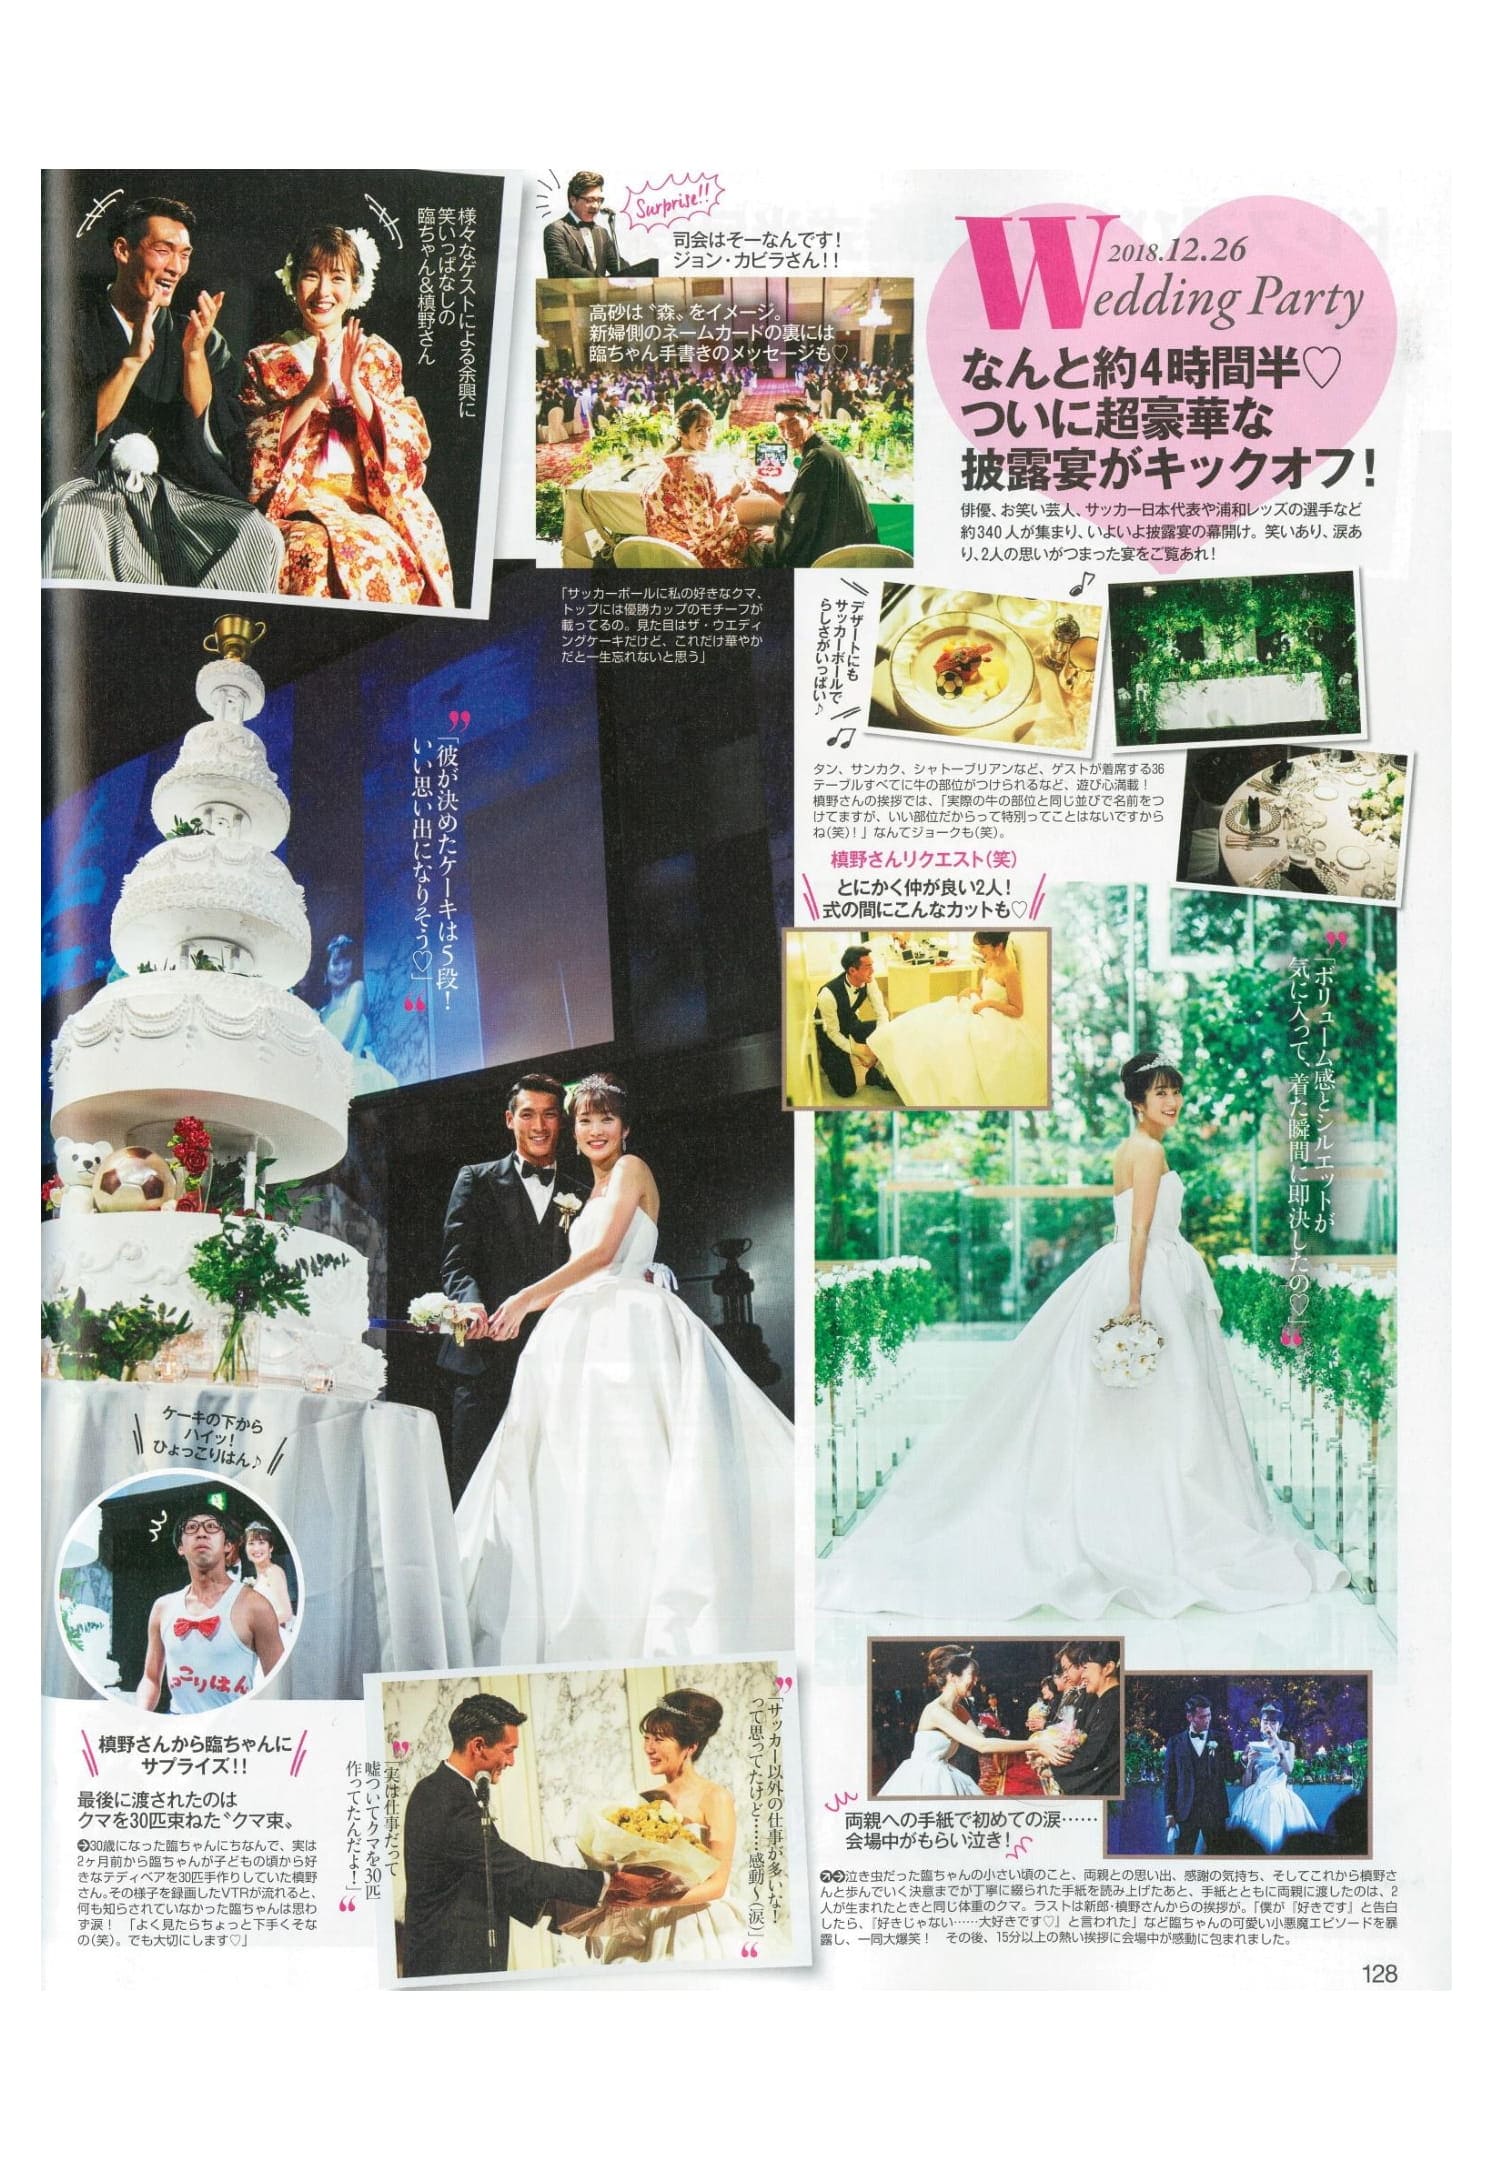 槙野智章選手と高梨臨さんの結婚式が掲載された雑誌and GIRL